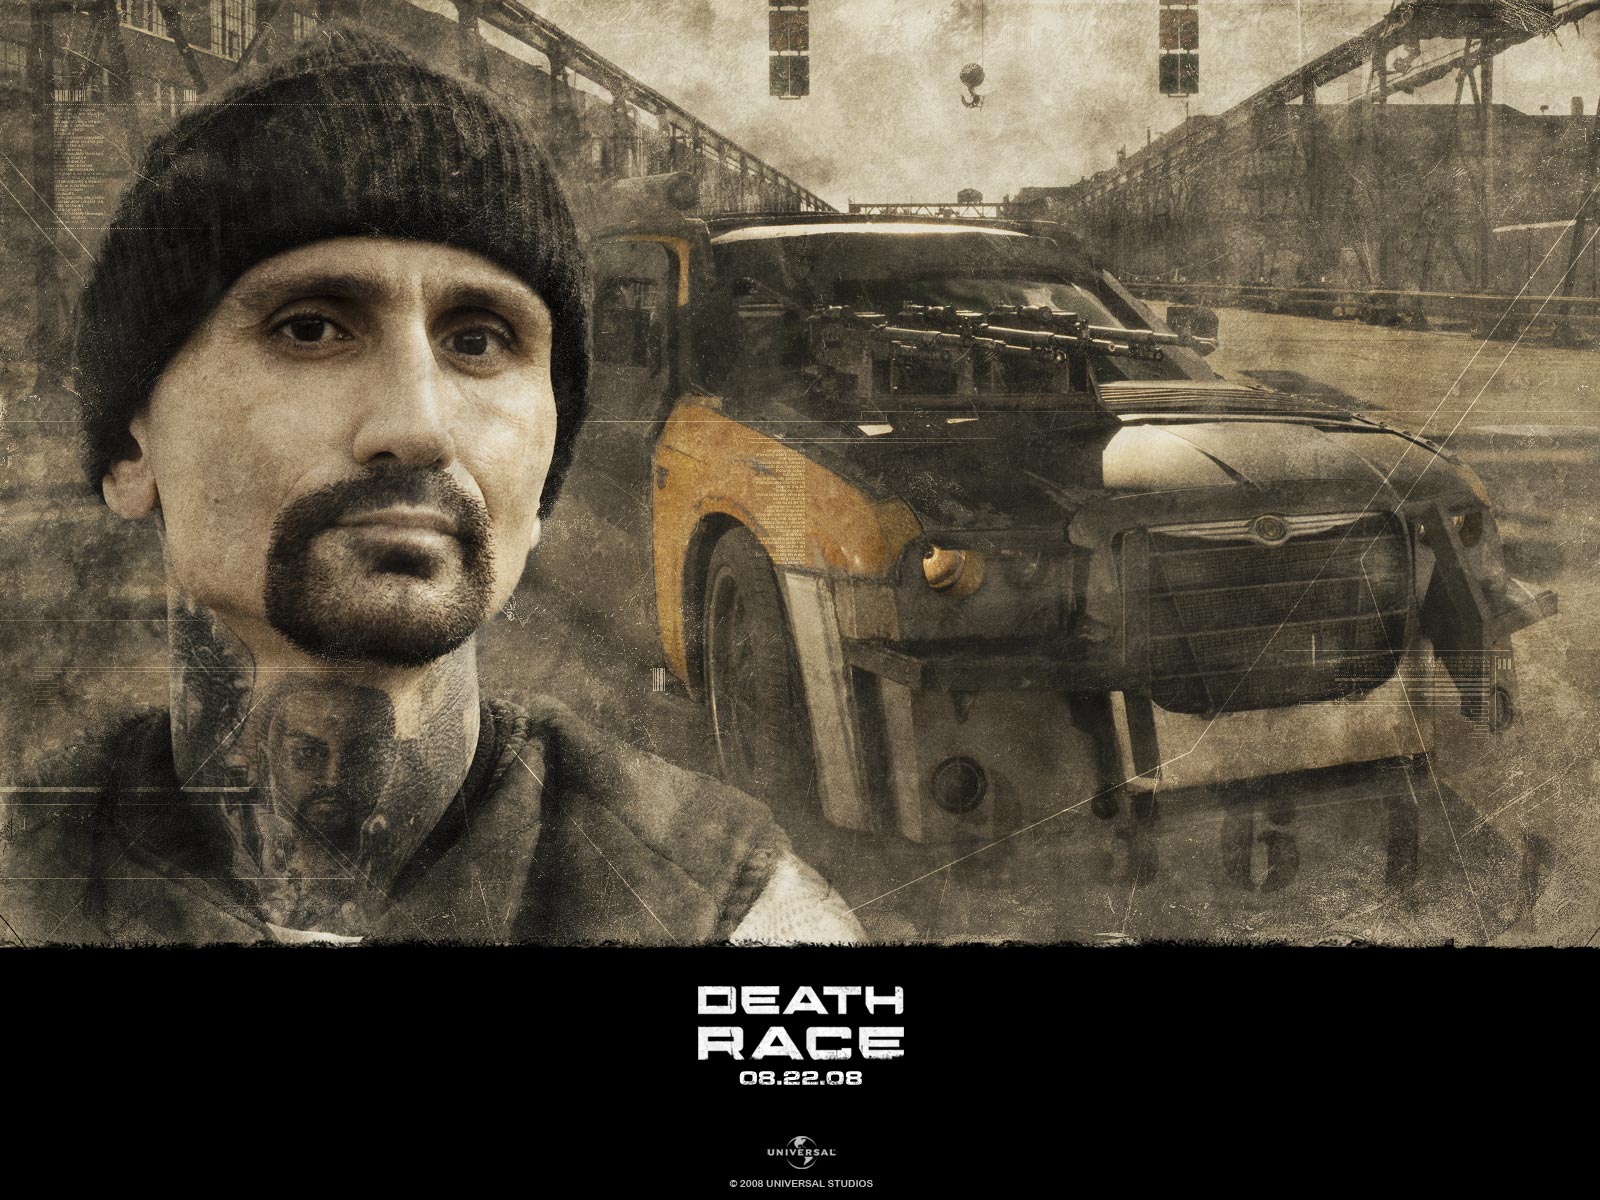 death race wallpaper,vehicle,car,poster,photography,portrait